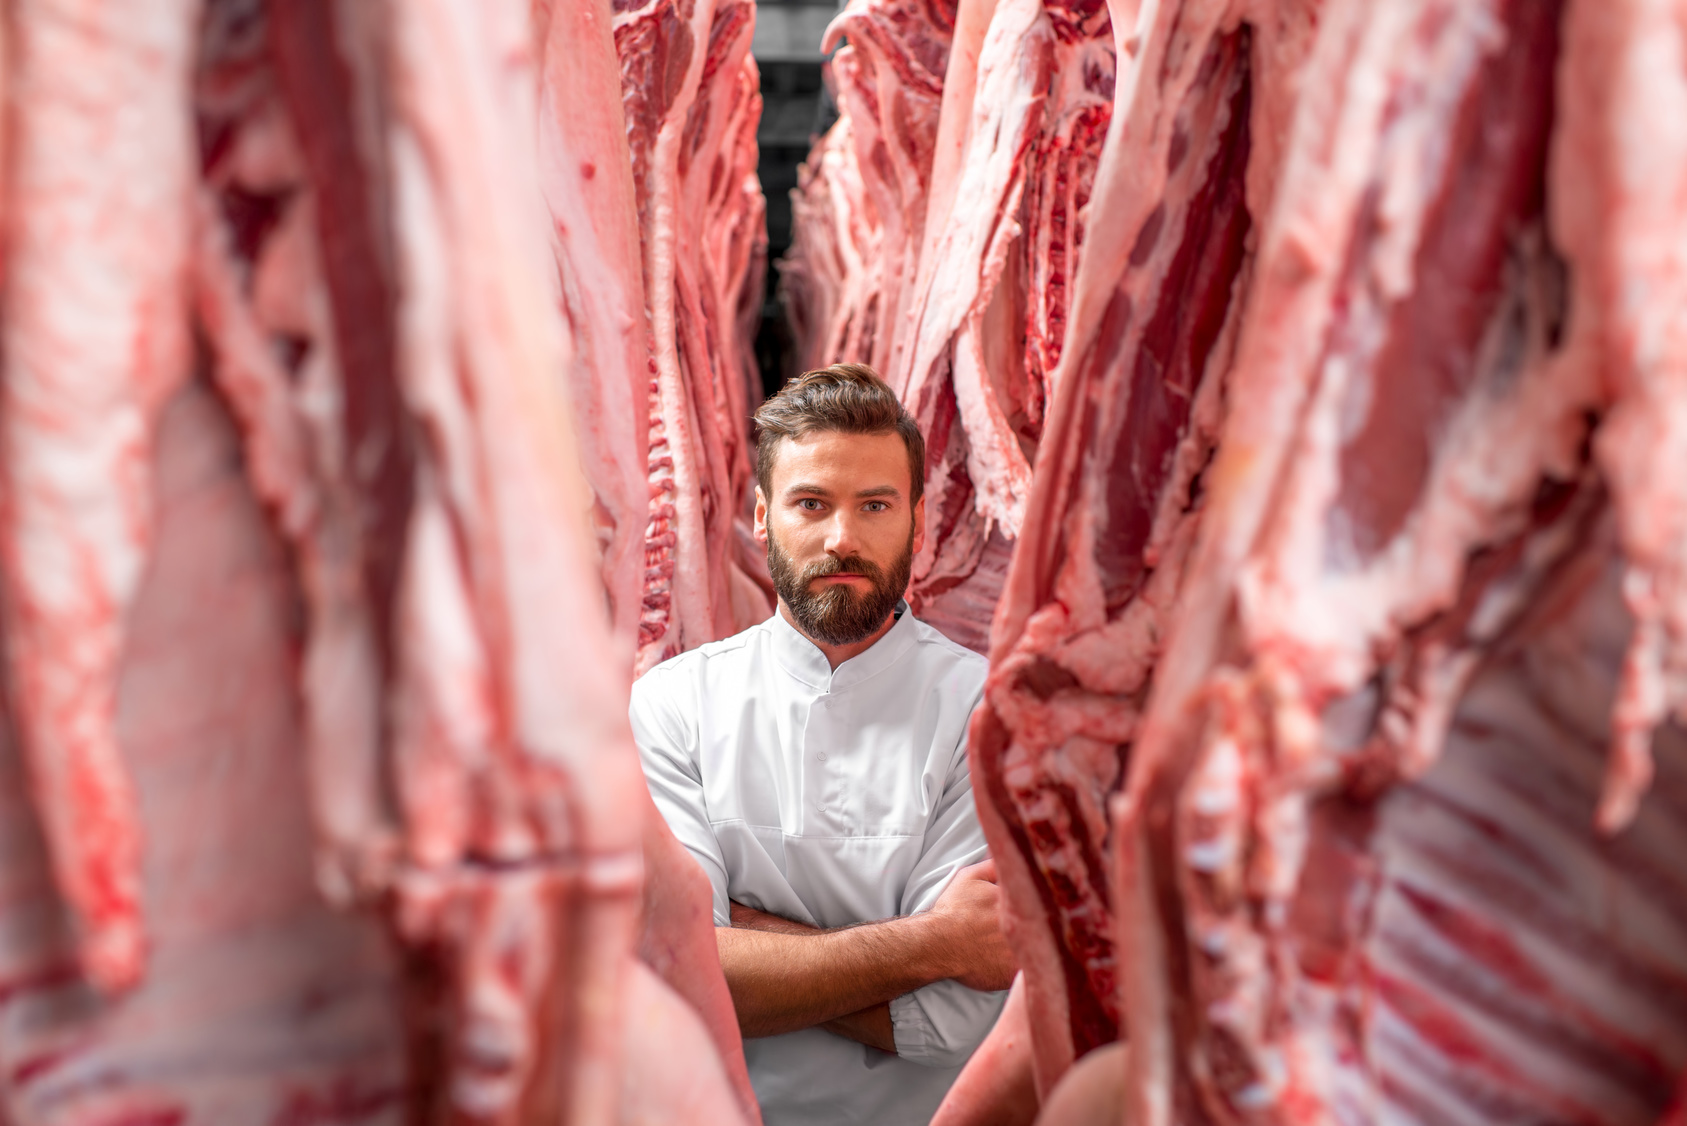 Equistone Partners Europe übernimmt die Mehrheit am Fleischwarenhersteller Group of Butchers von Nordian Capital Partners.